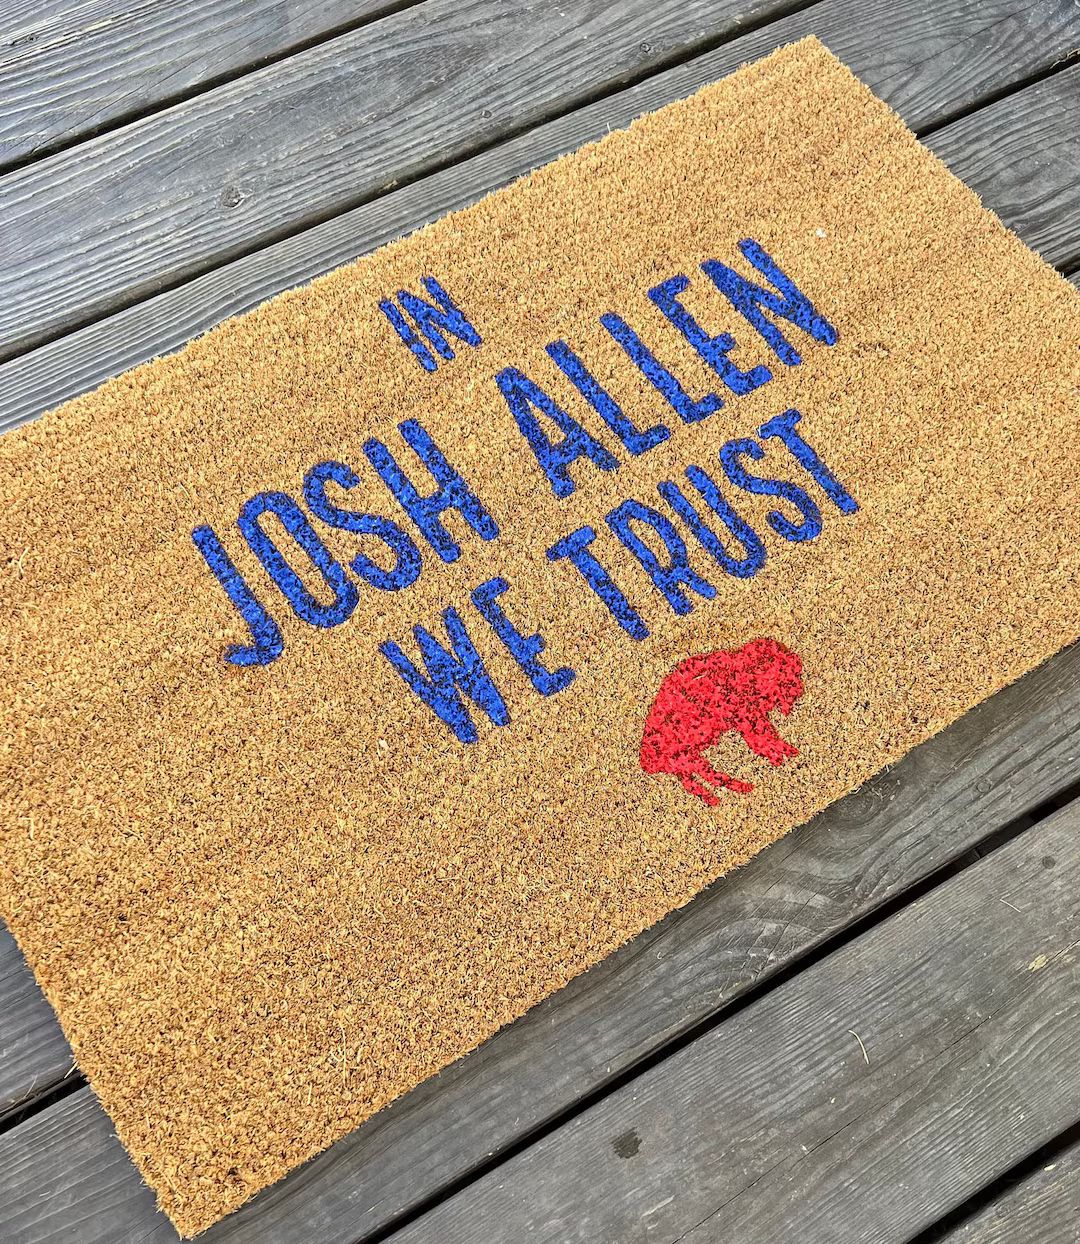 Buffalo Bills Doormat, Josh Allen, NFL | Etsy (US)